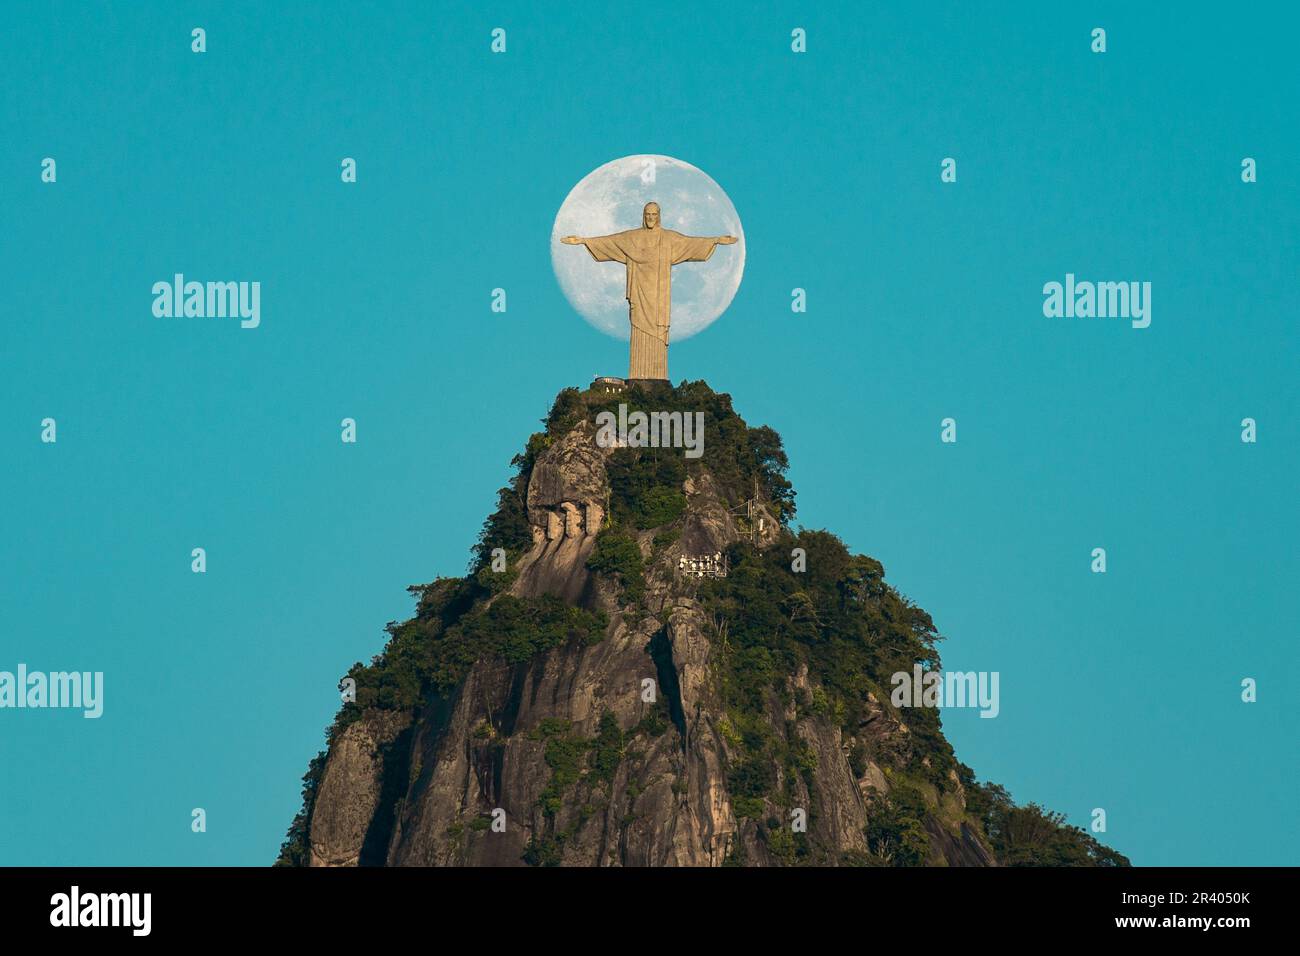 Momento único con la Luna y Cristo Redentor, Río de Janeiro, Brasil - Fotografía de Donatas Dabravolskas Foto de stock